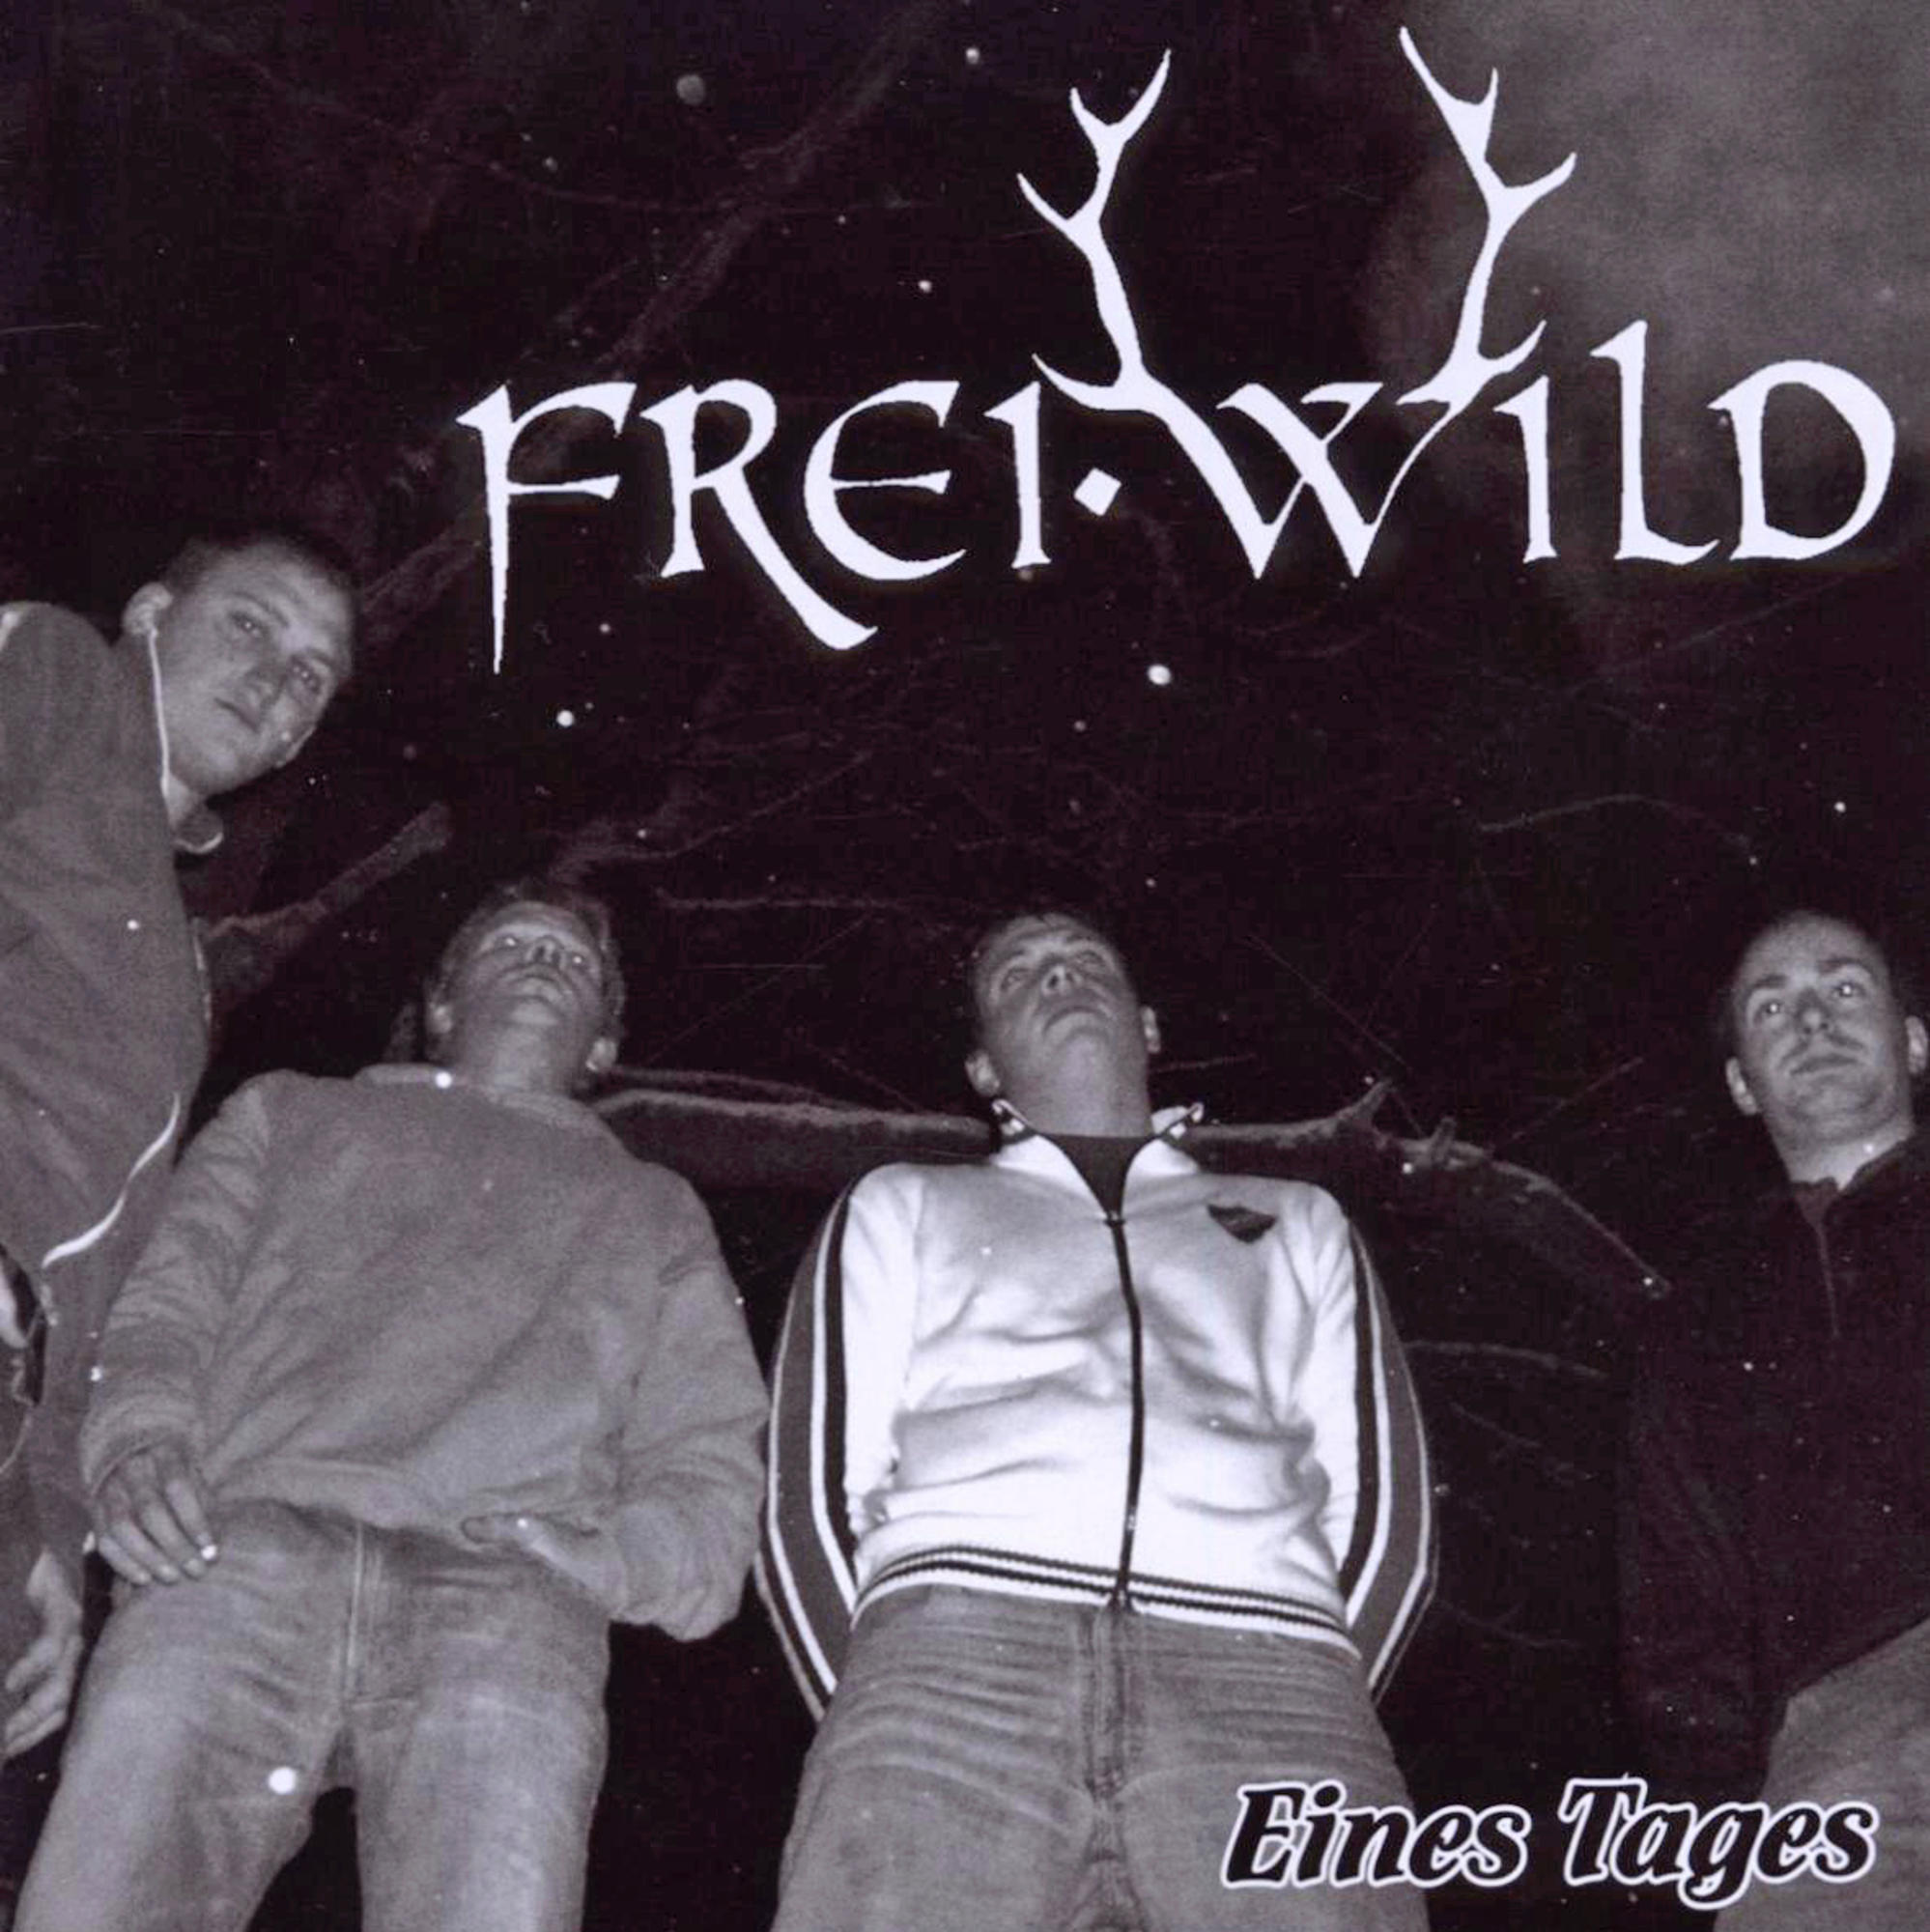 Tages Frei.Wild - (CD) - Eines